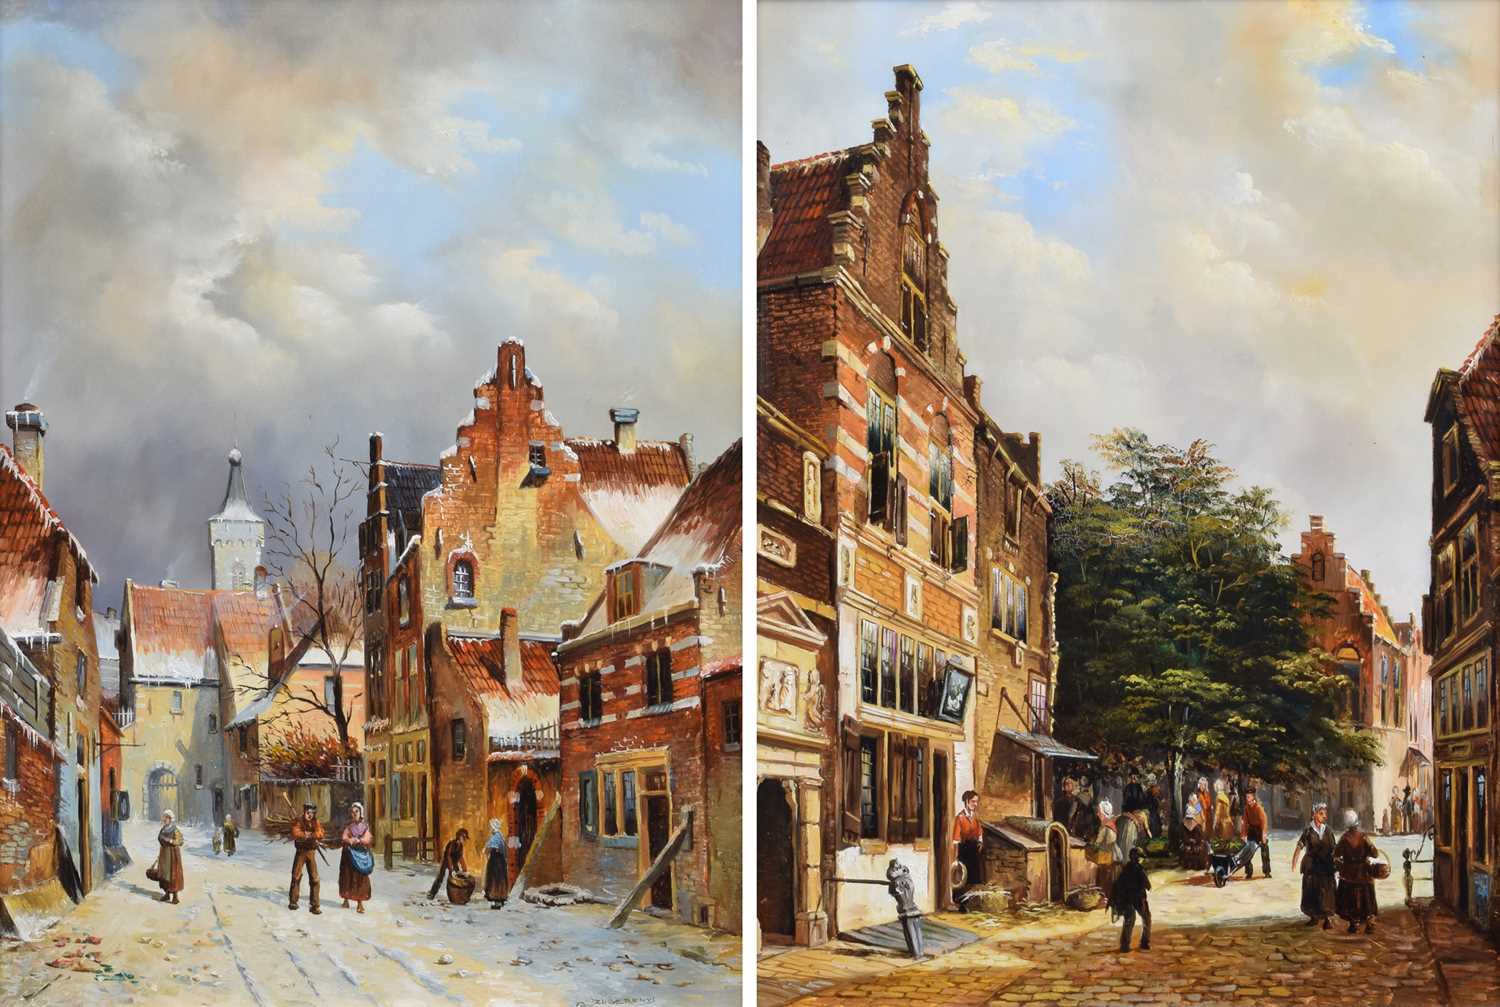 Daniel Szeberenyi (Hungarian 1949-) Dutch street scenes